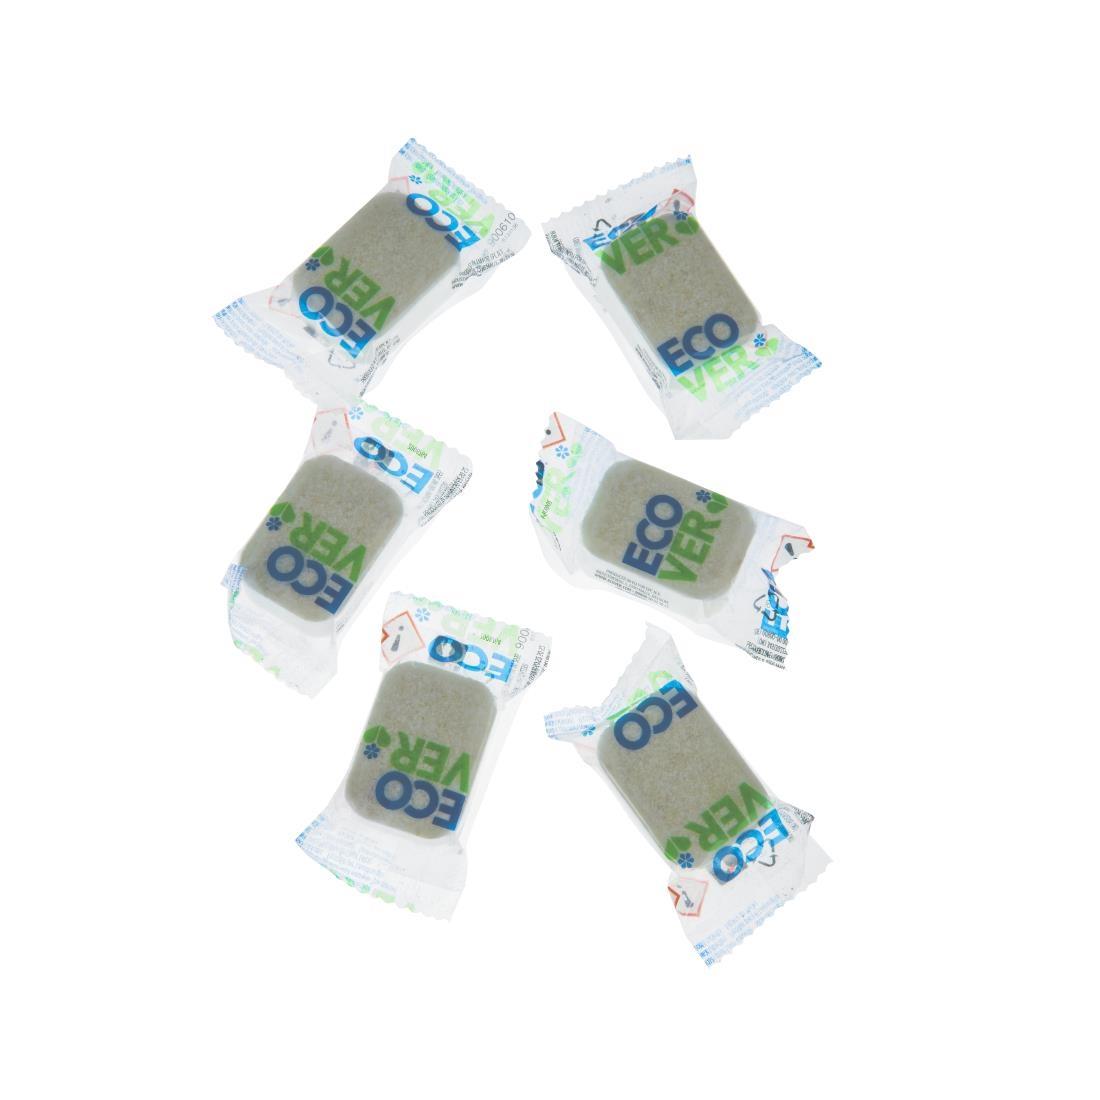 Ecover Dishwasher Detergent Tablets (70 Pack) - GG200  - 3